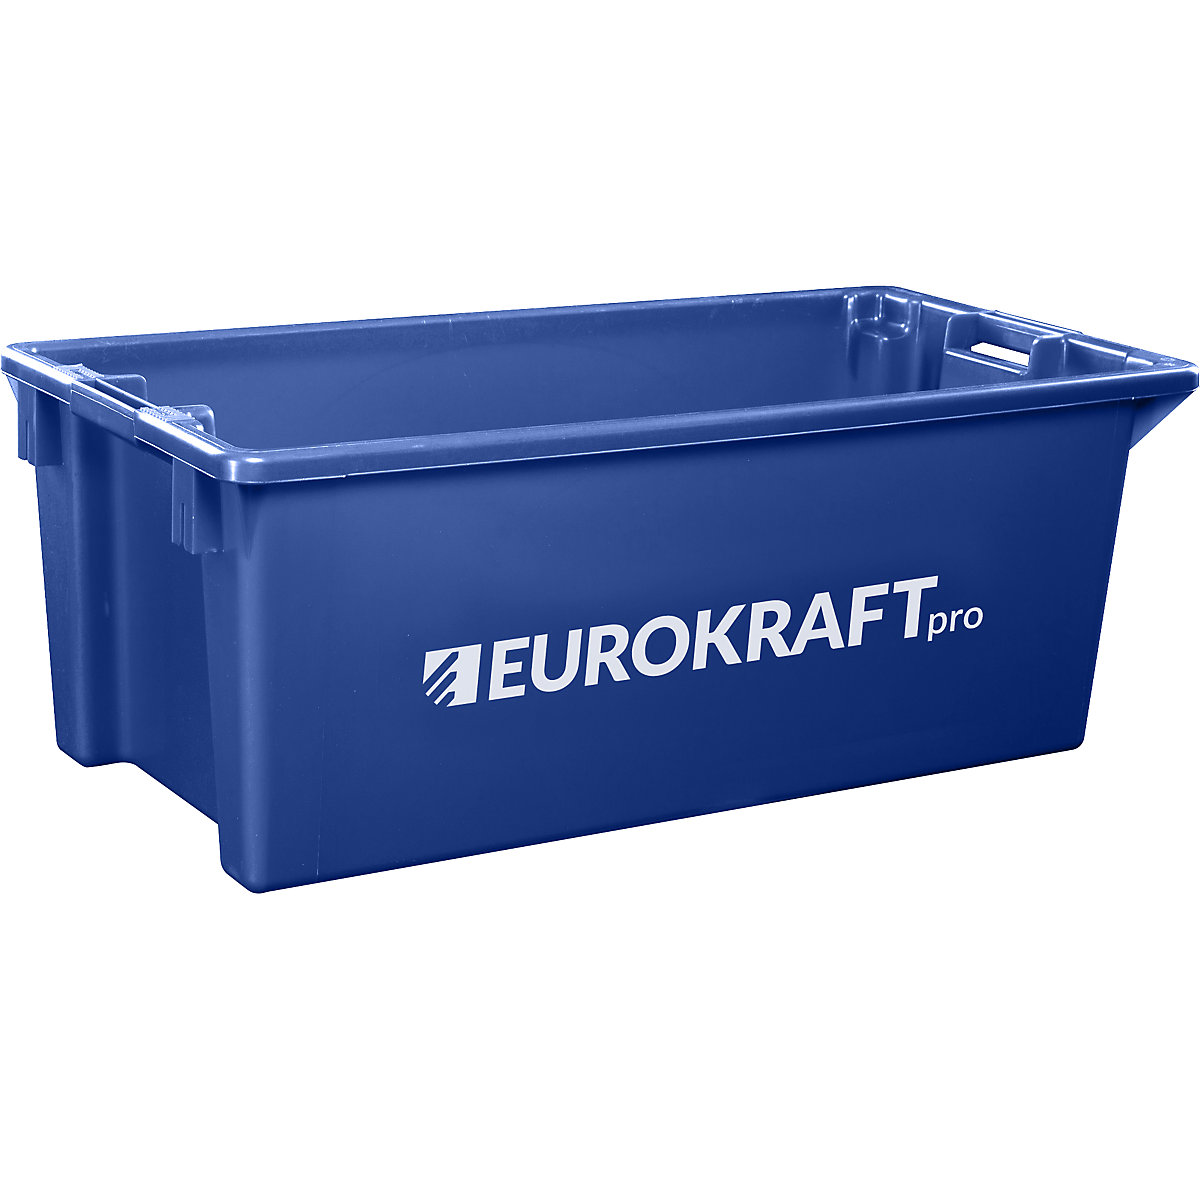 EUROKRAFTpro – Otočná stohovací nádoba z polypropylenu vhodného pro potraviny, obsah 13 litrů, bal.j. 4 ks, stěny a dno plné, modrá